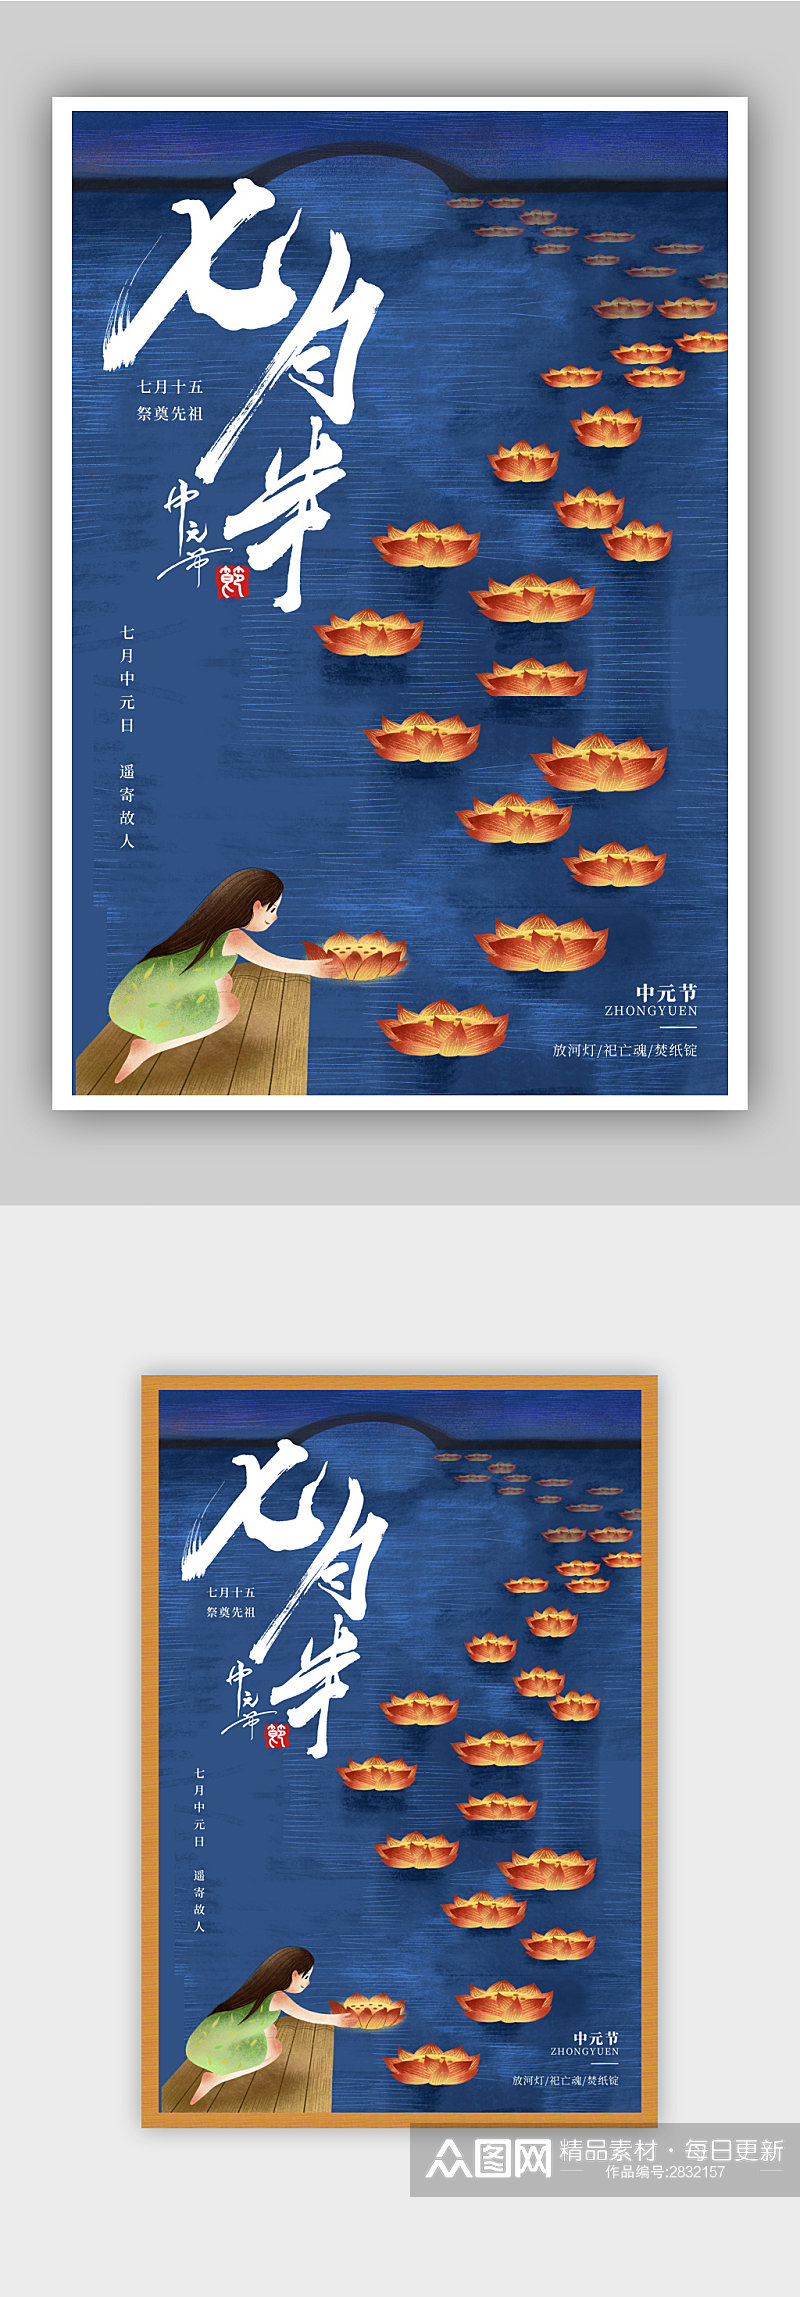 中国传统节日中元节海报设计素材